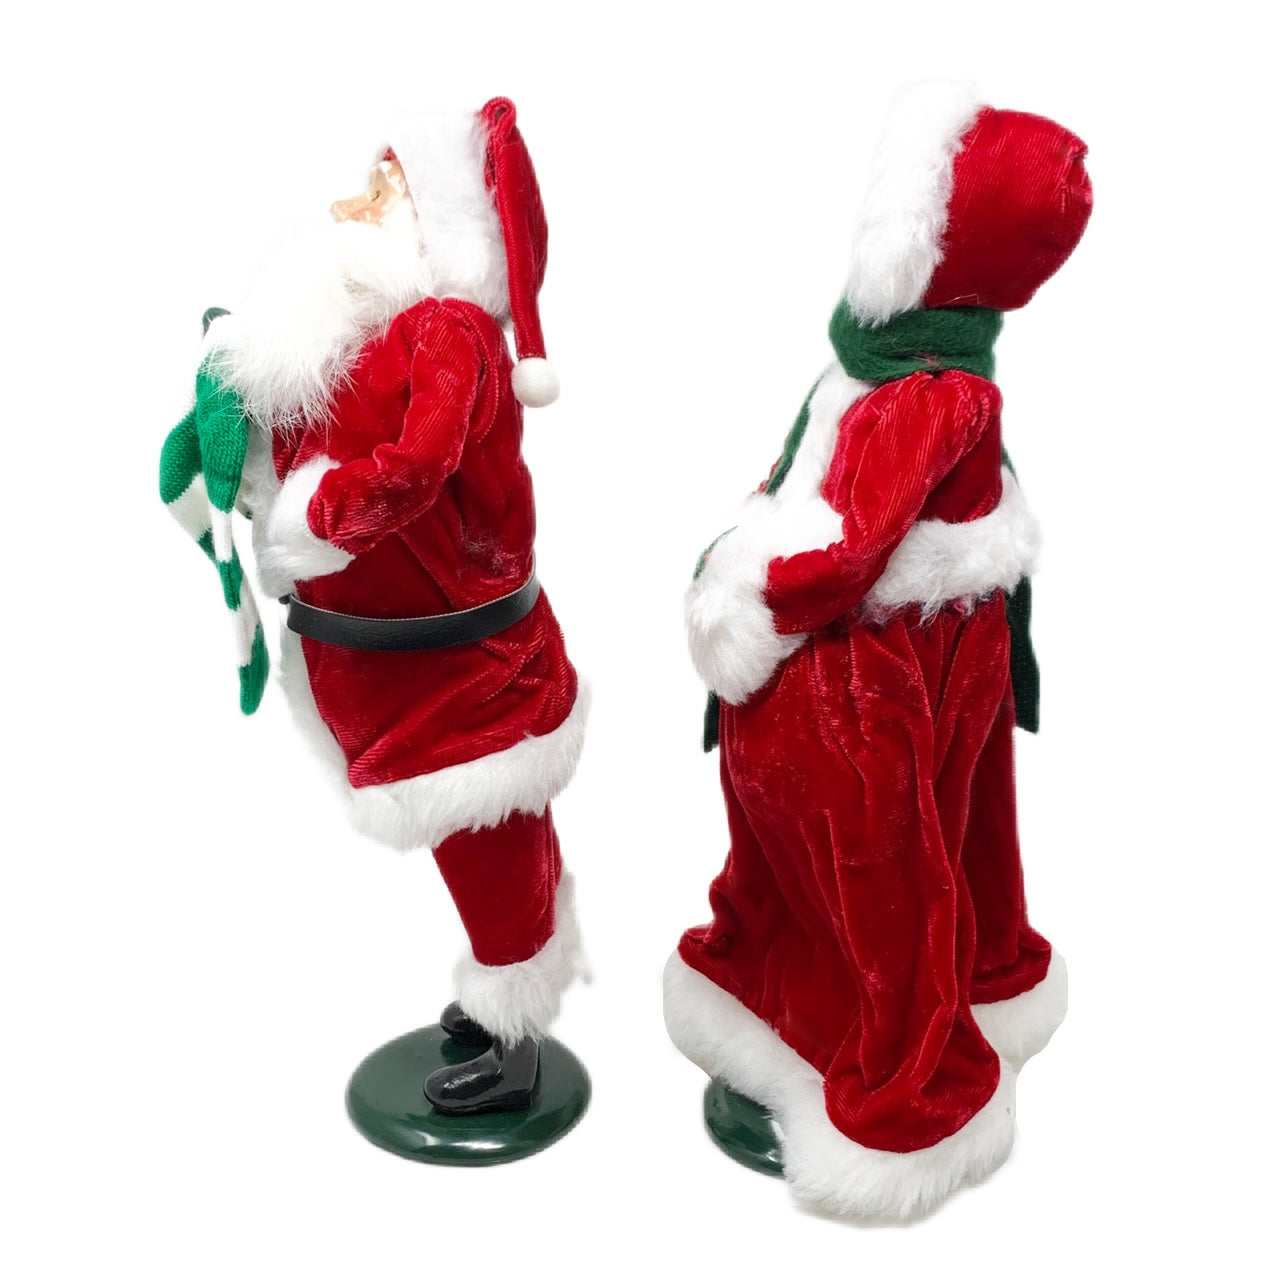 Byers Choice Carolers Santa & Mrs. Claus (Pair)